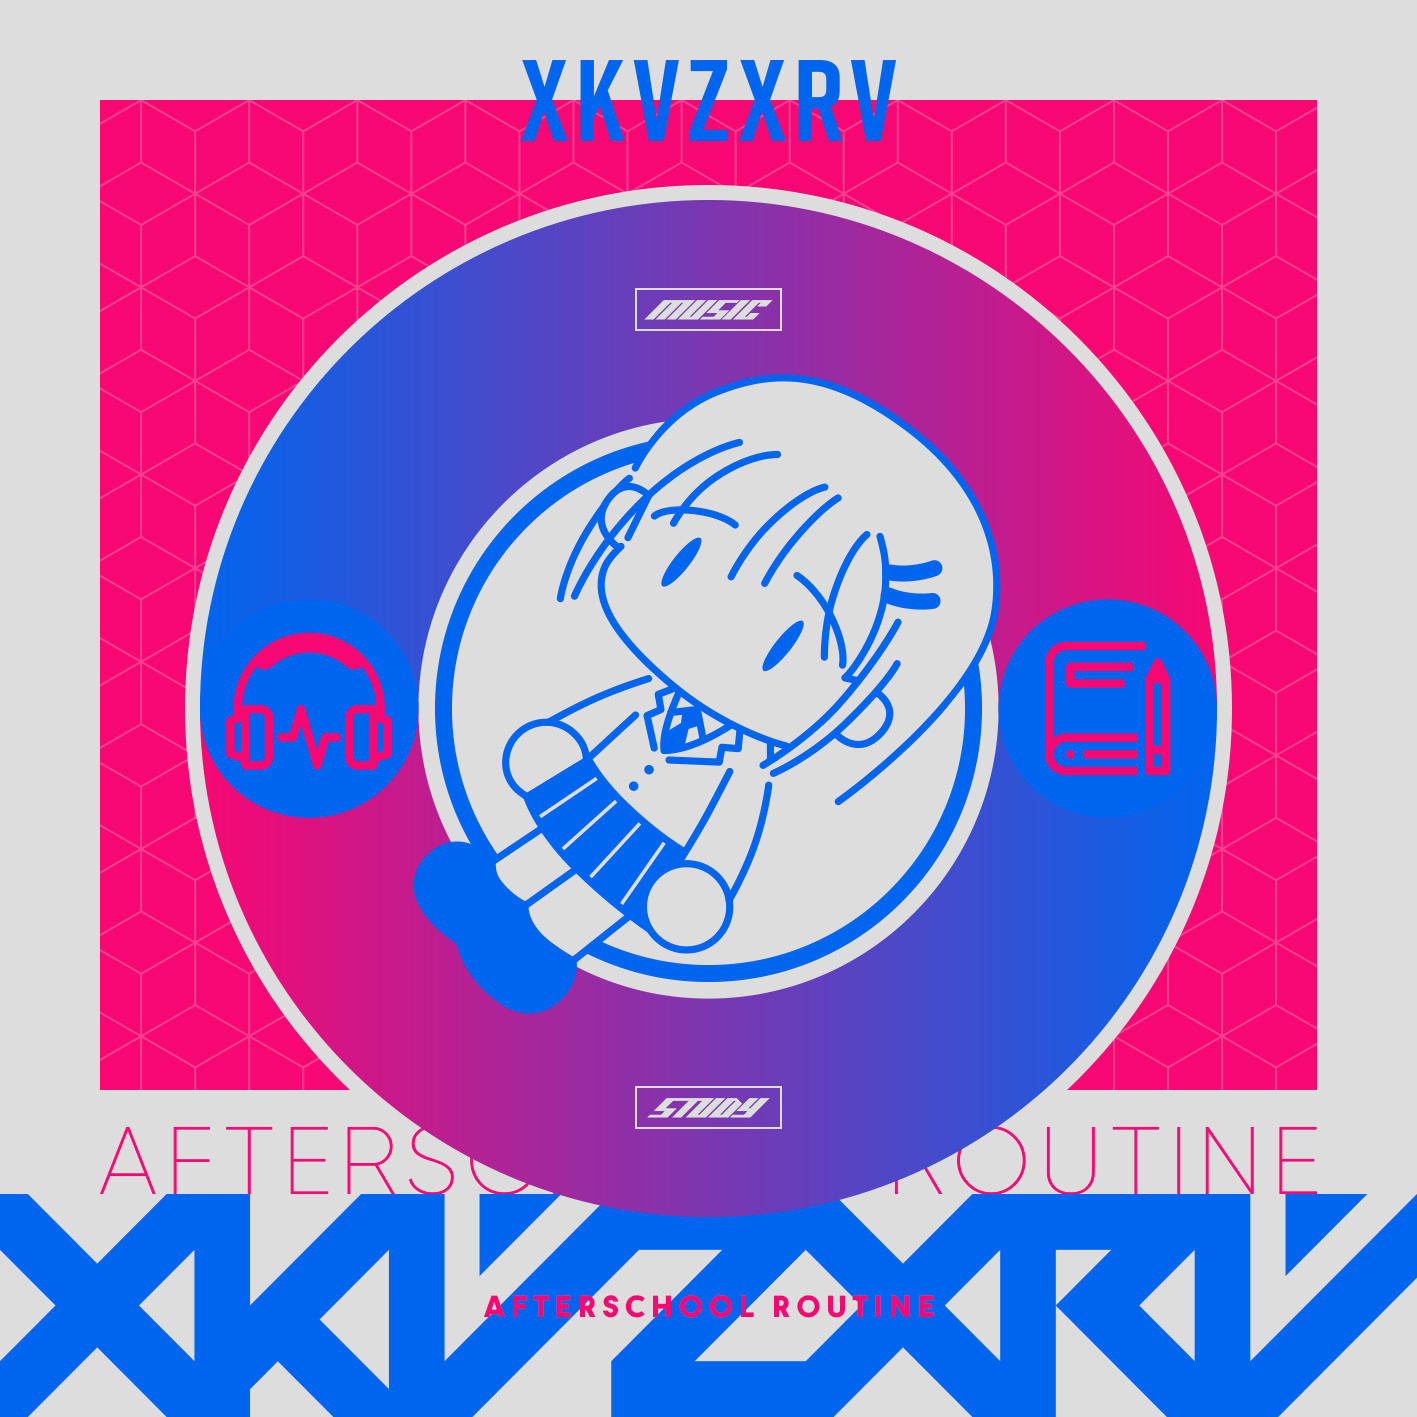 xkvzxrv – Afterschool Routine